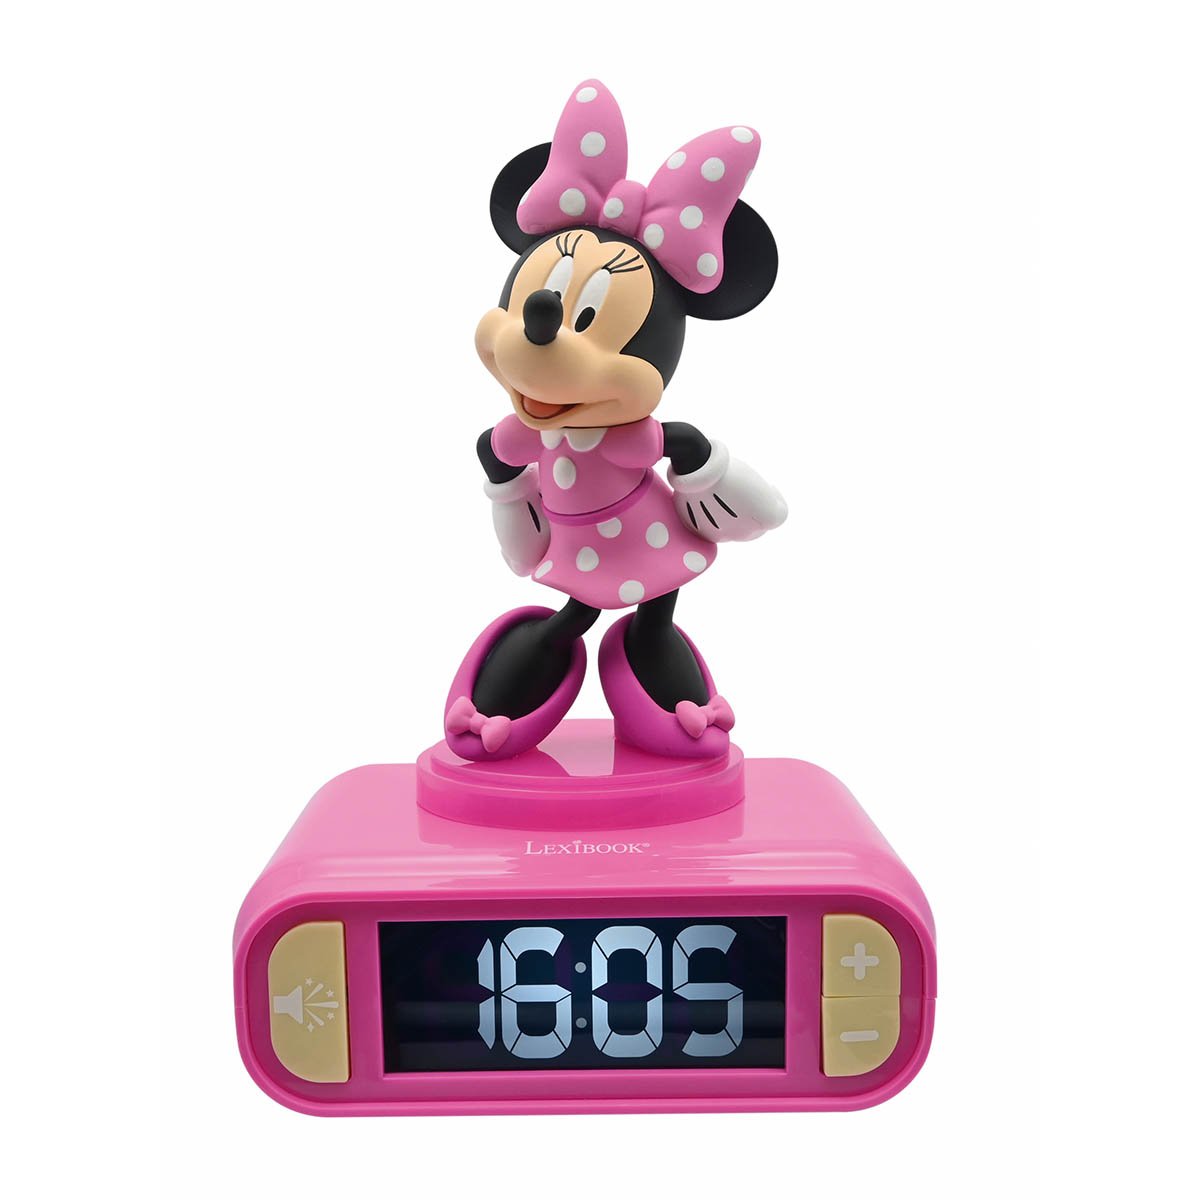 Ceas digital cu alarma si lumina de noapte, Lexibook, Minnie Mouse